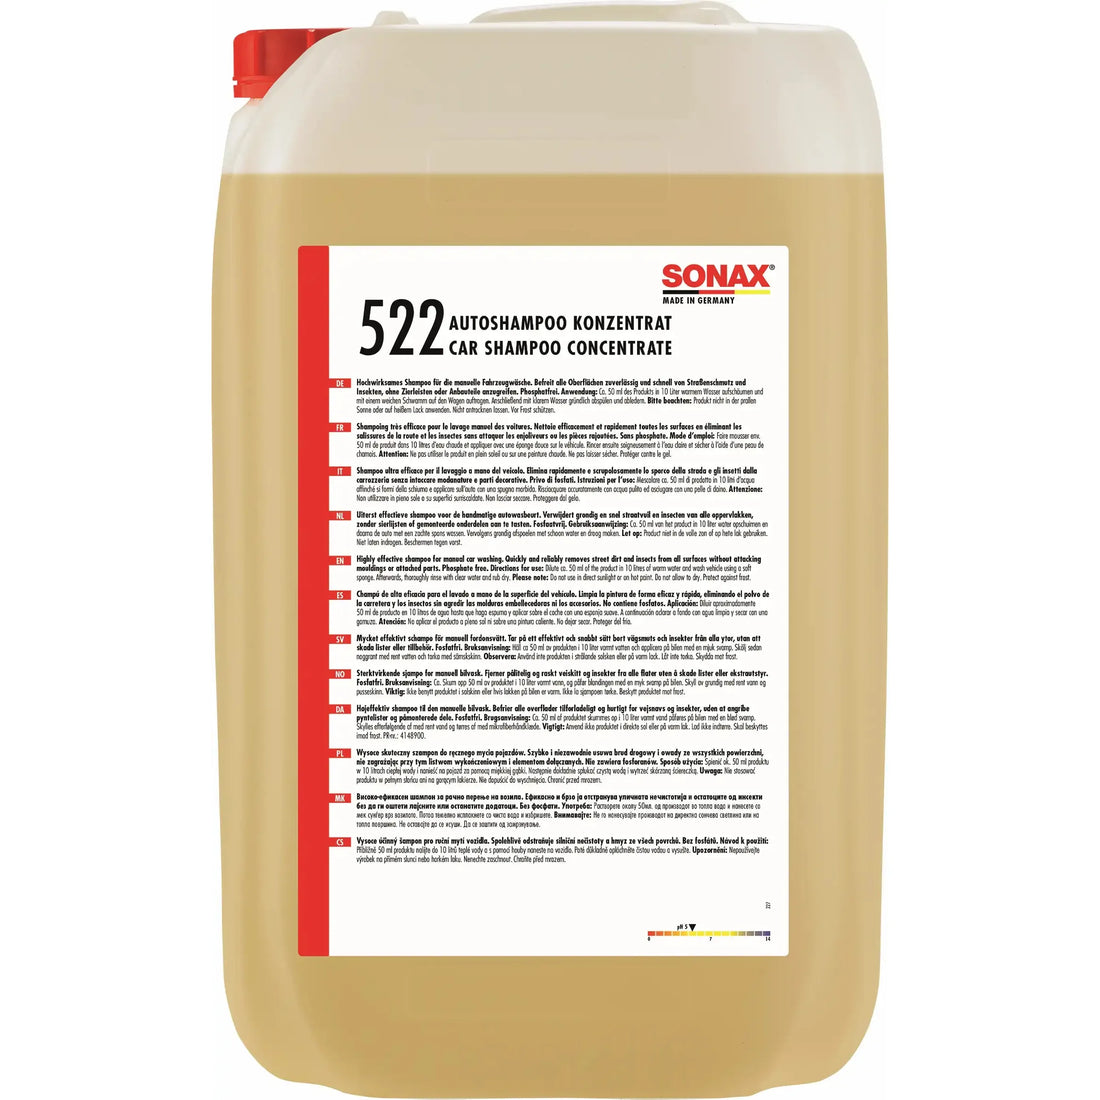 SONAX Profiline Glans Shampoo 25L - BilligStyling